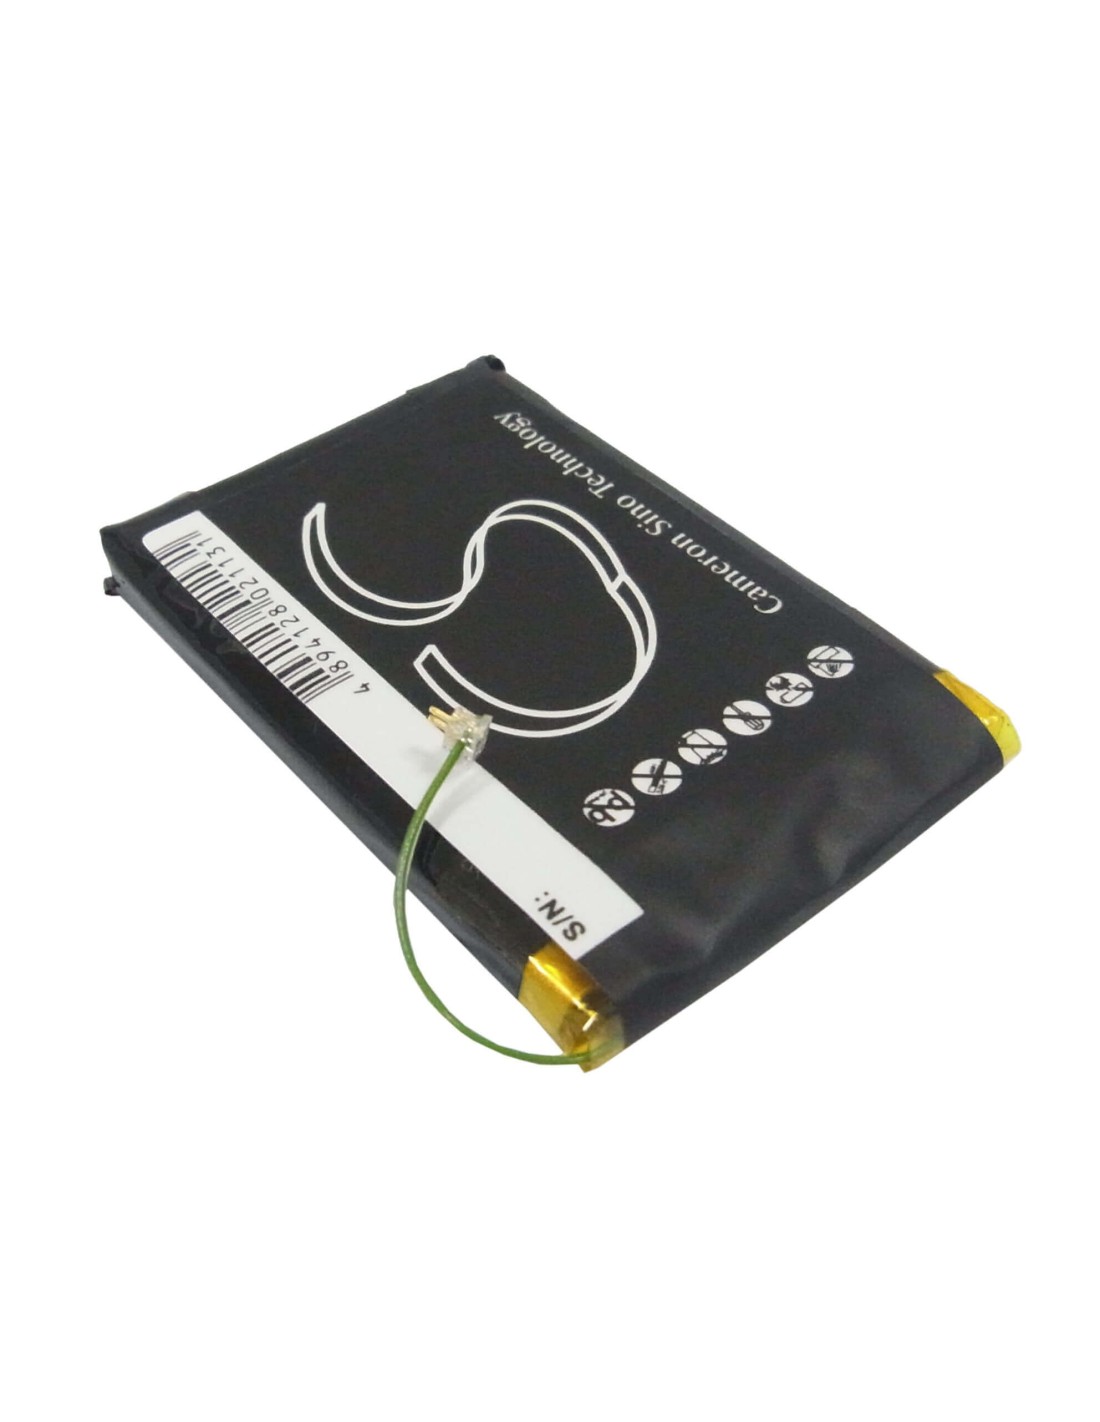 Battery for Iriver Clix Plus, U20, Rei-iriverclix2 3.7V, 950mAh - 3.52Wh